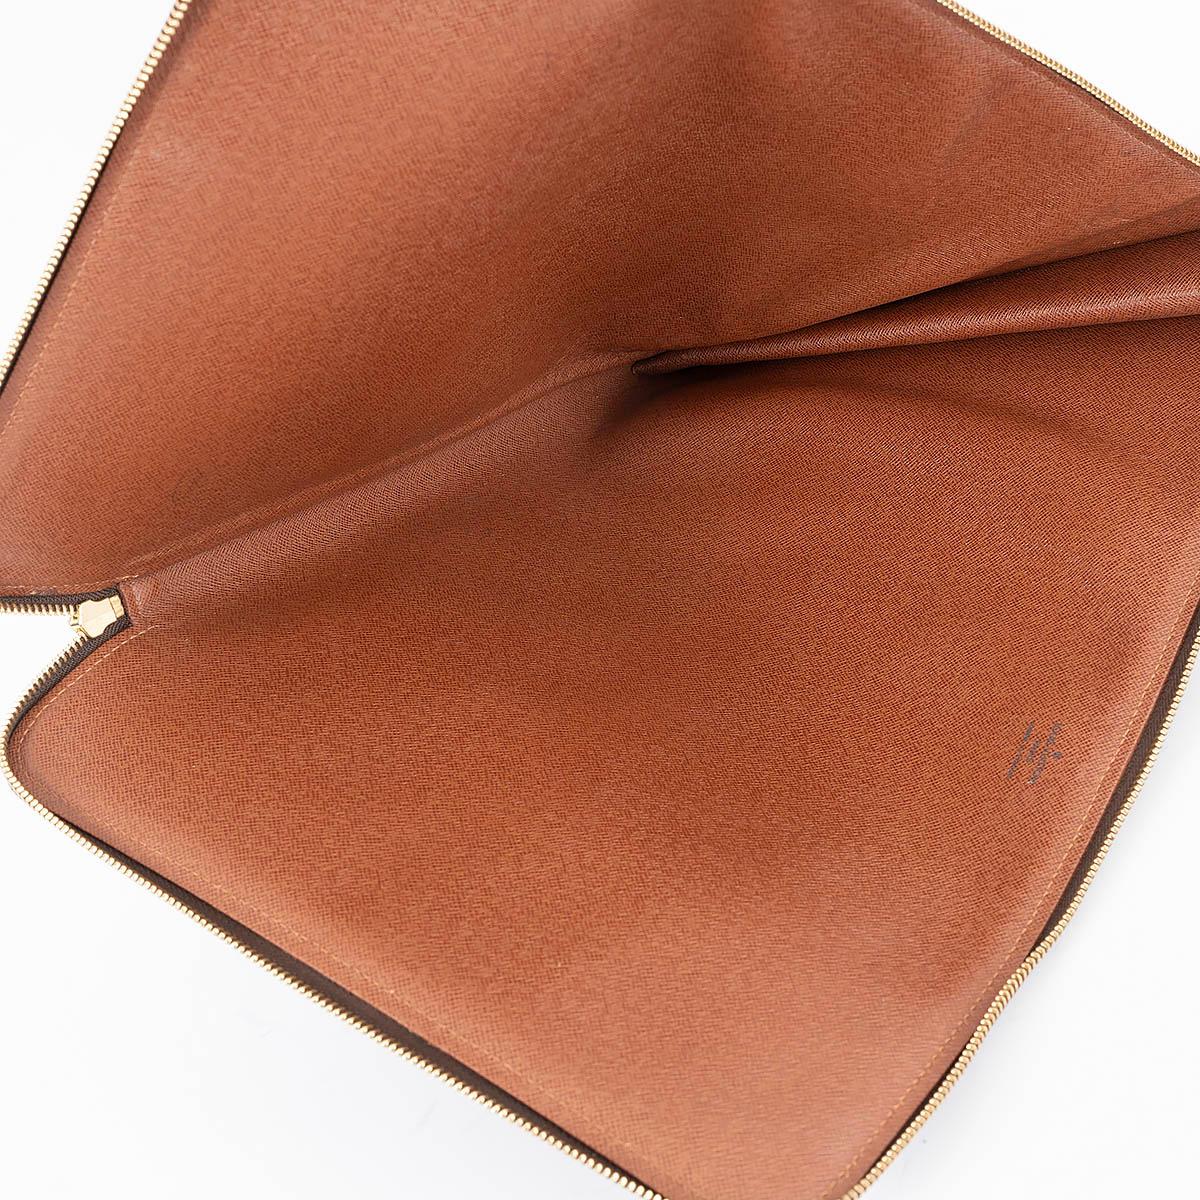 LOUIS VUITTON brown Monogram canvas POCHE DOCUMENTS Portfolio Case Bag For Sale 1